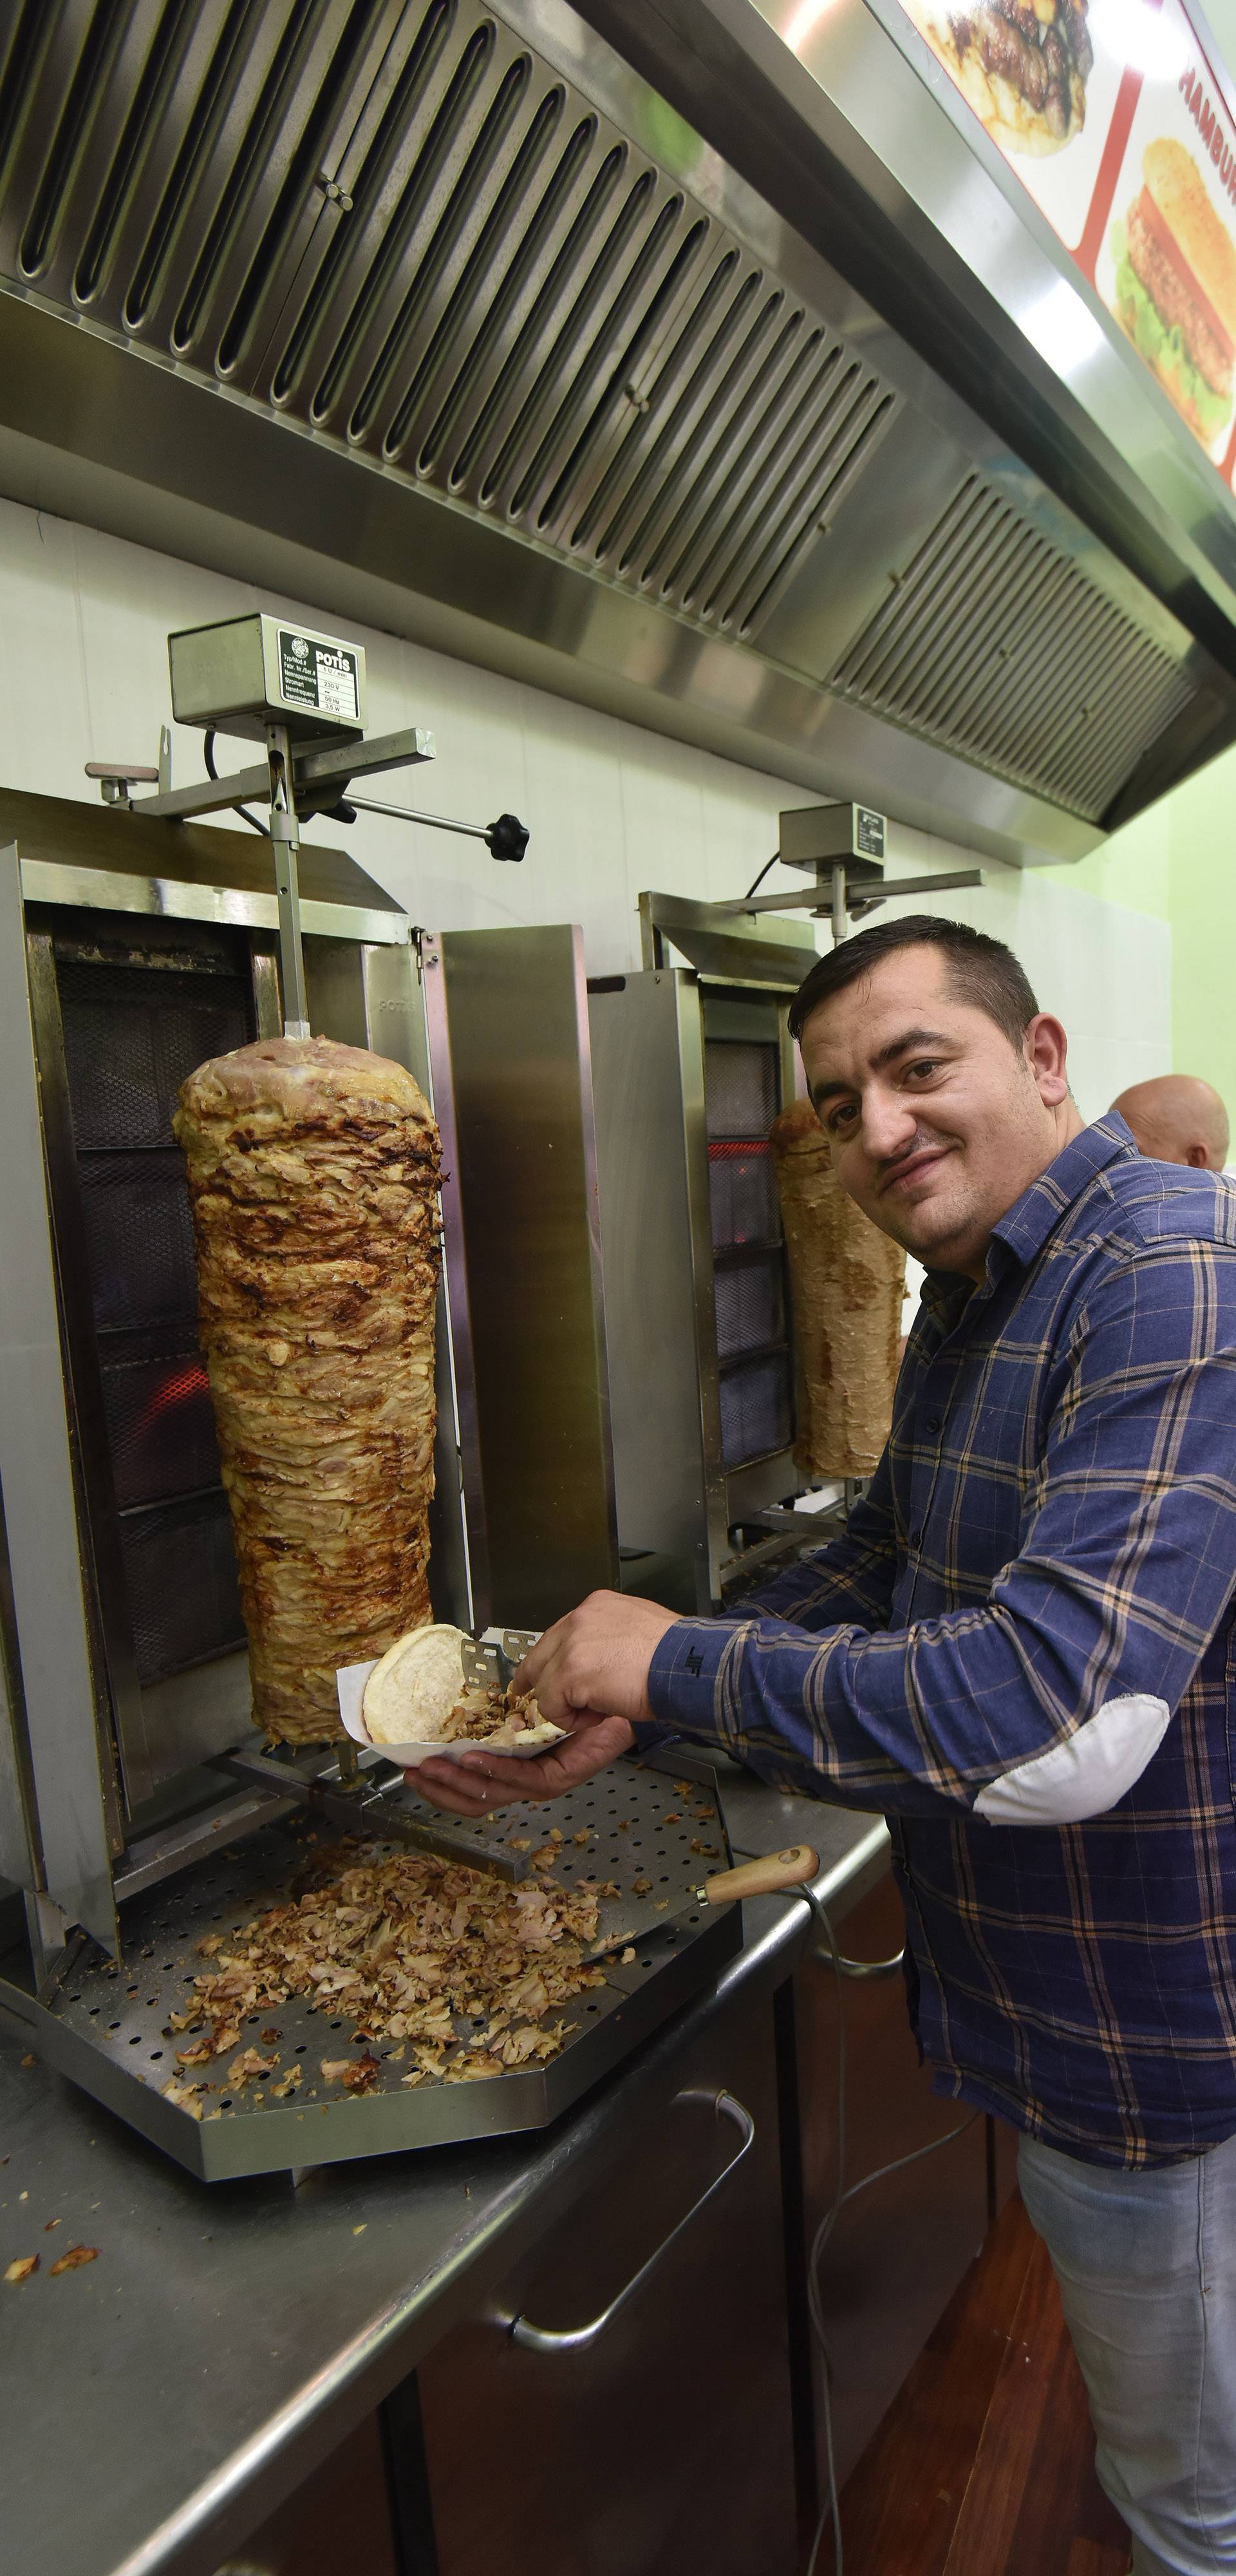 Pula: U novootvorenoj poslovnici fast fooda dijel ise basplatan kebab